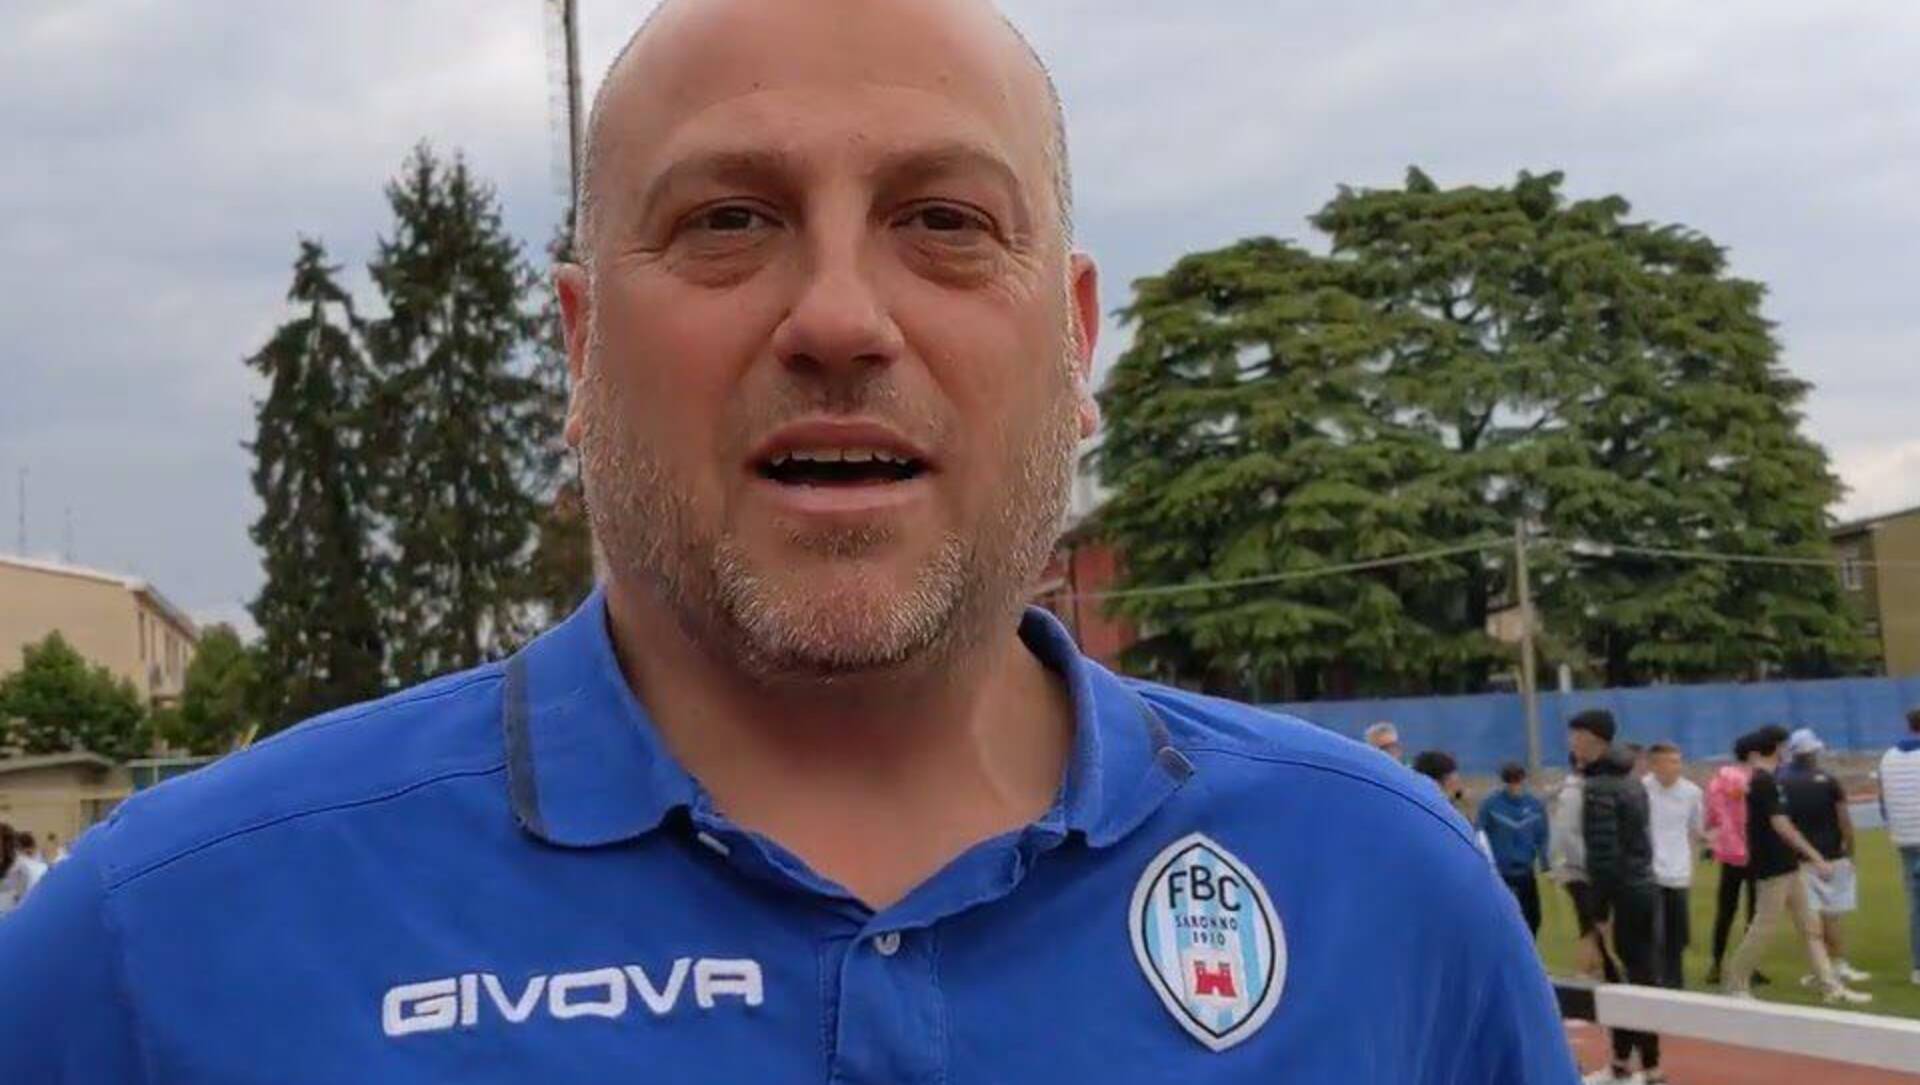 Calcio Promozione, Fbc Saronno-Mariano parla Tricarico: “Meraviglioso finale”